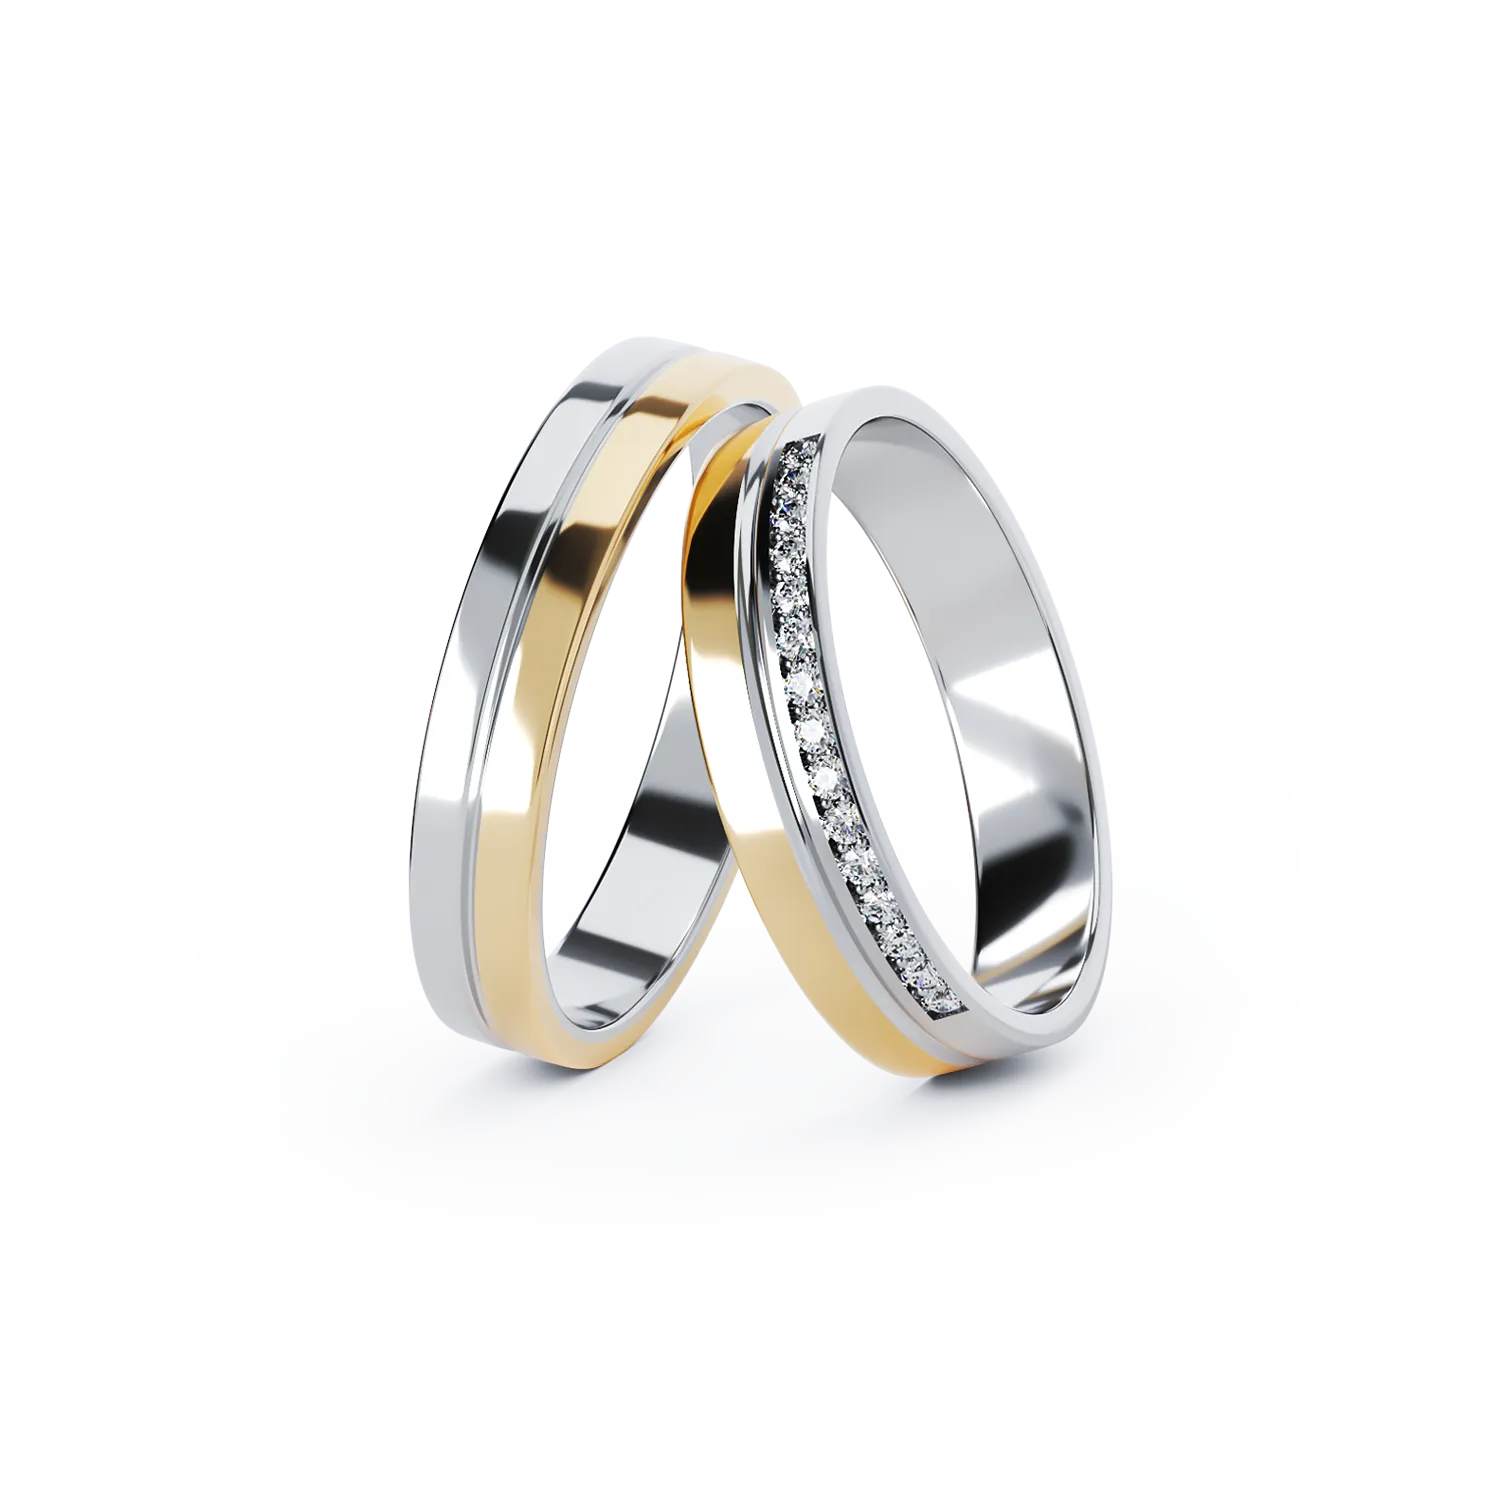 TEI-COEUR gold wedding rings